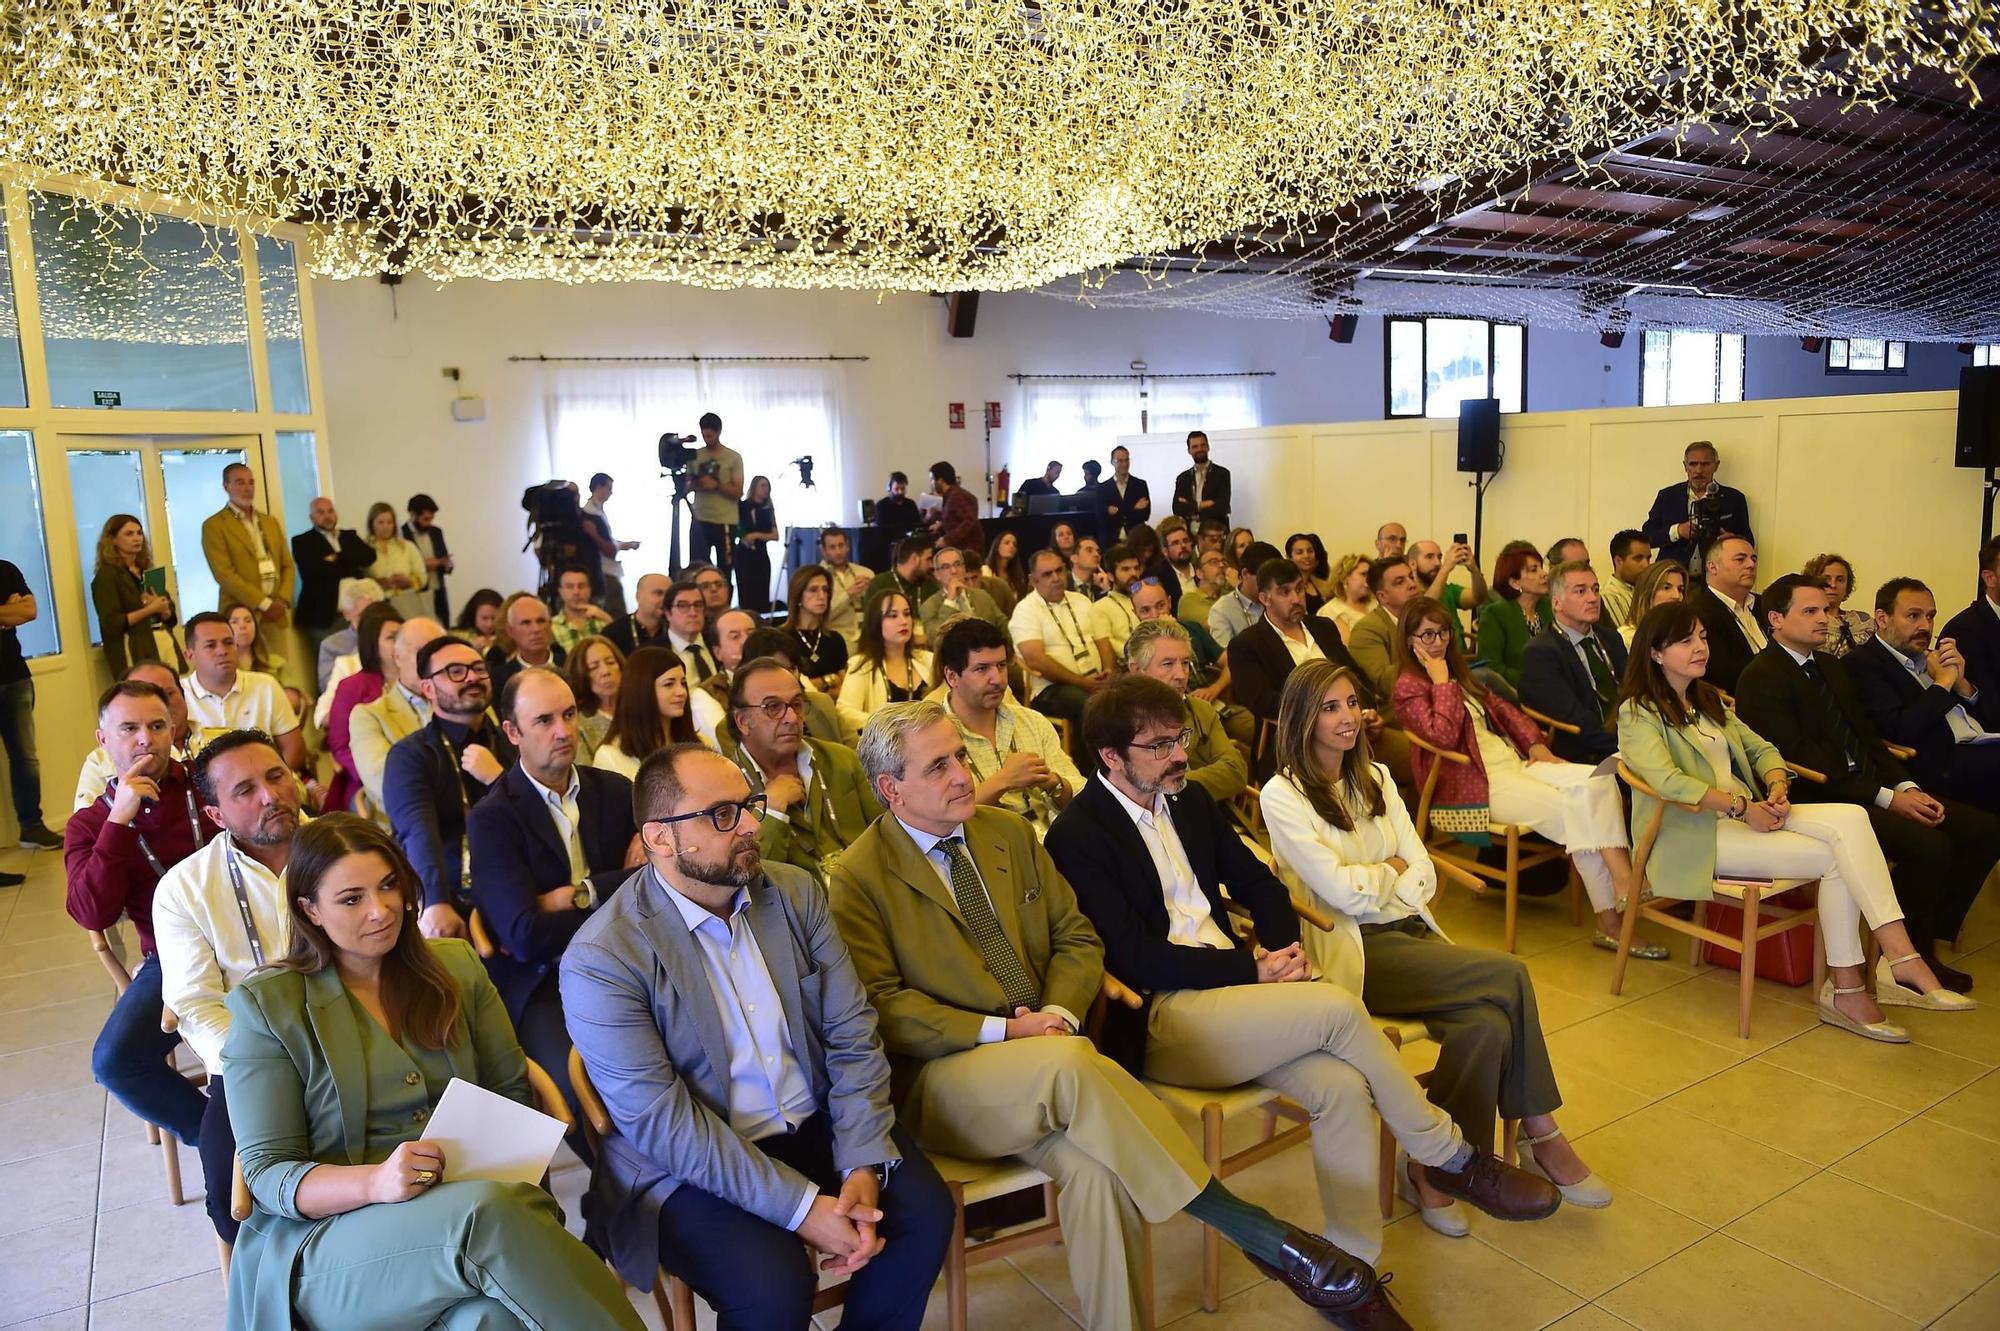 Iberdrola presenta su mayor proyecto de reforestación en España, en La Vera